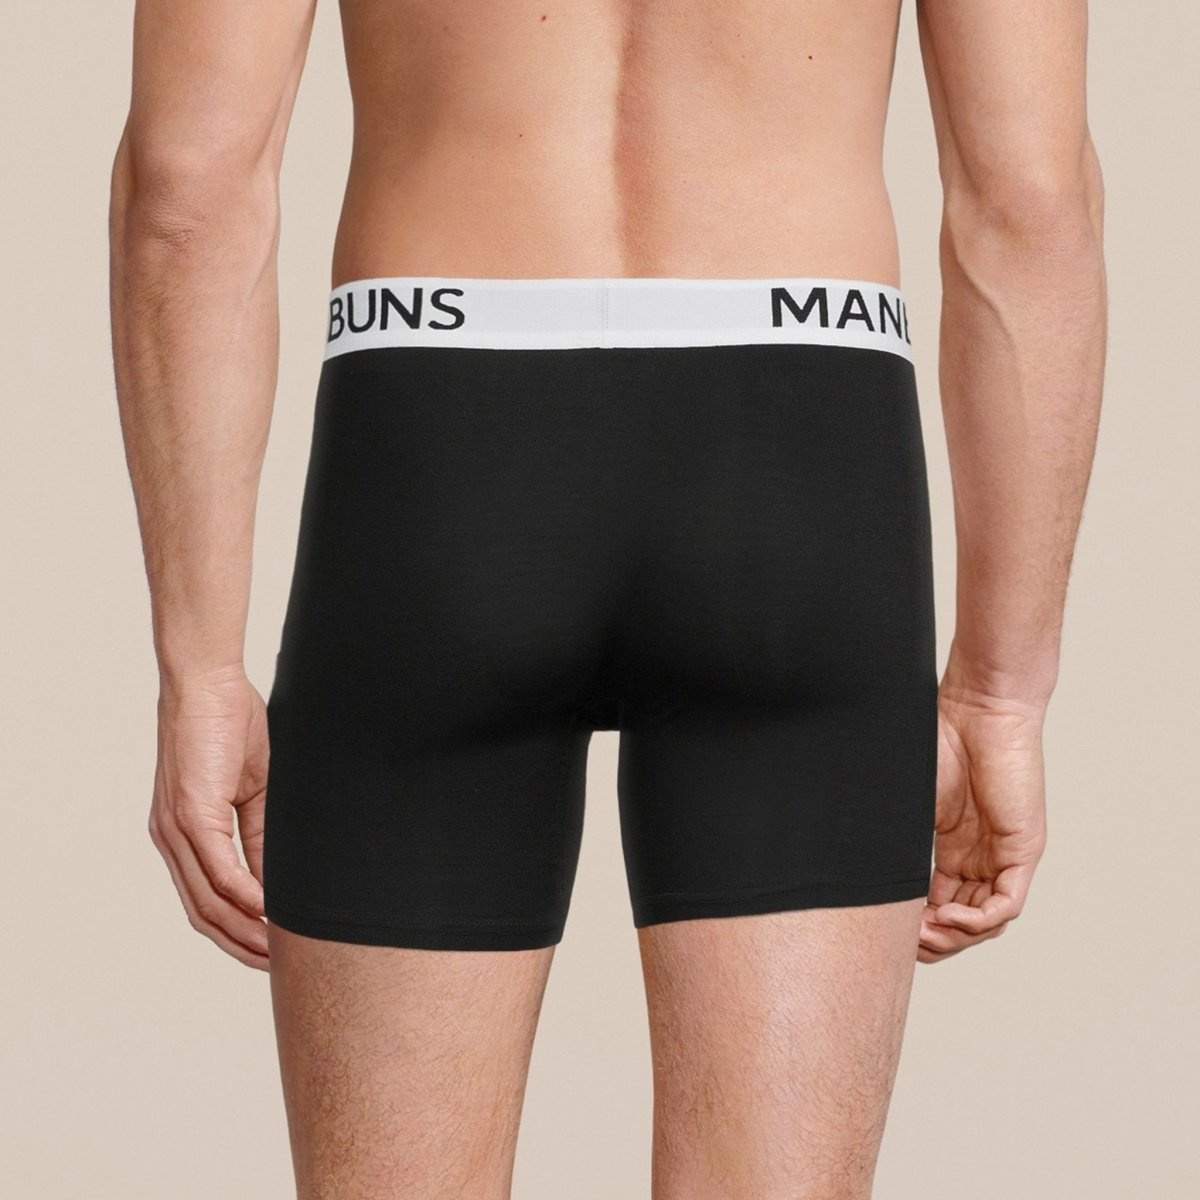 Boxer Briefs, Pouch Underwear For Men